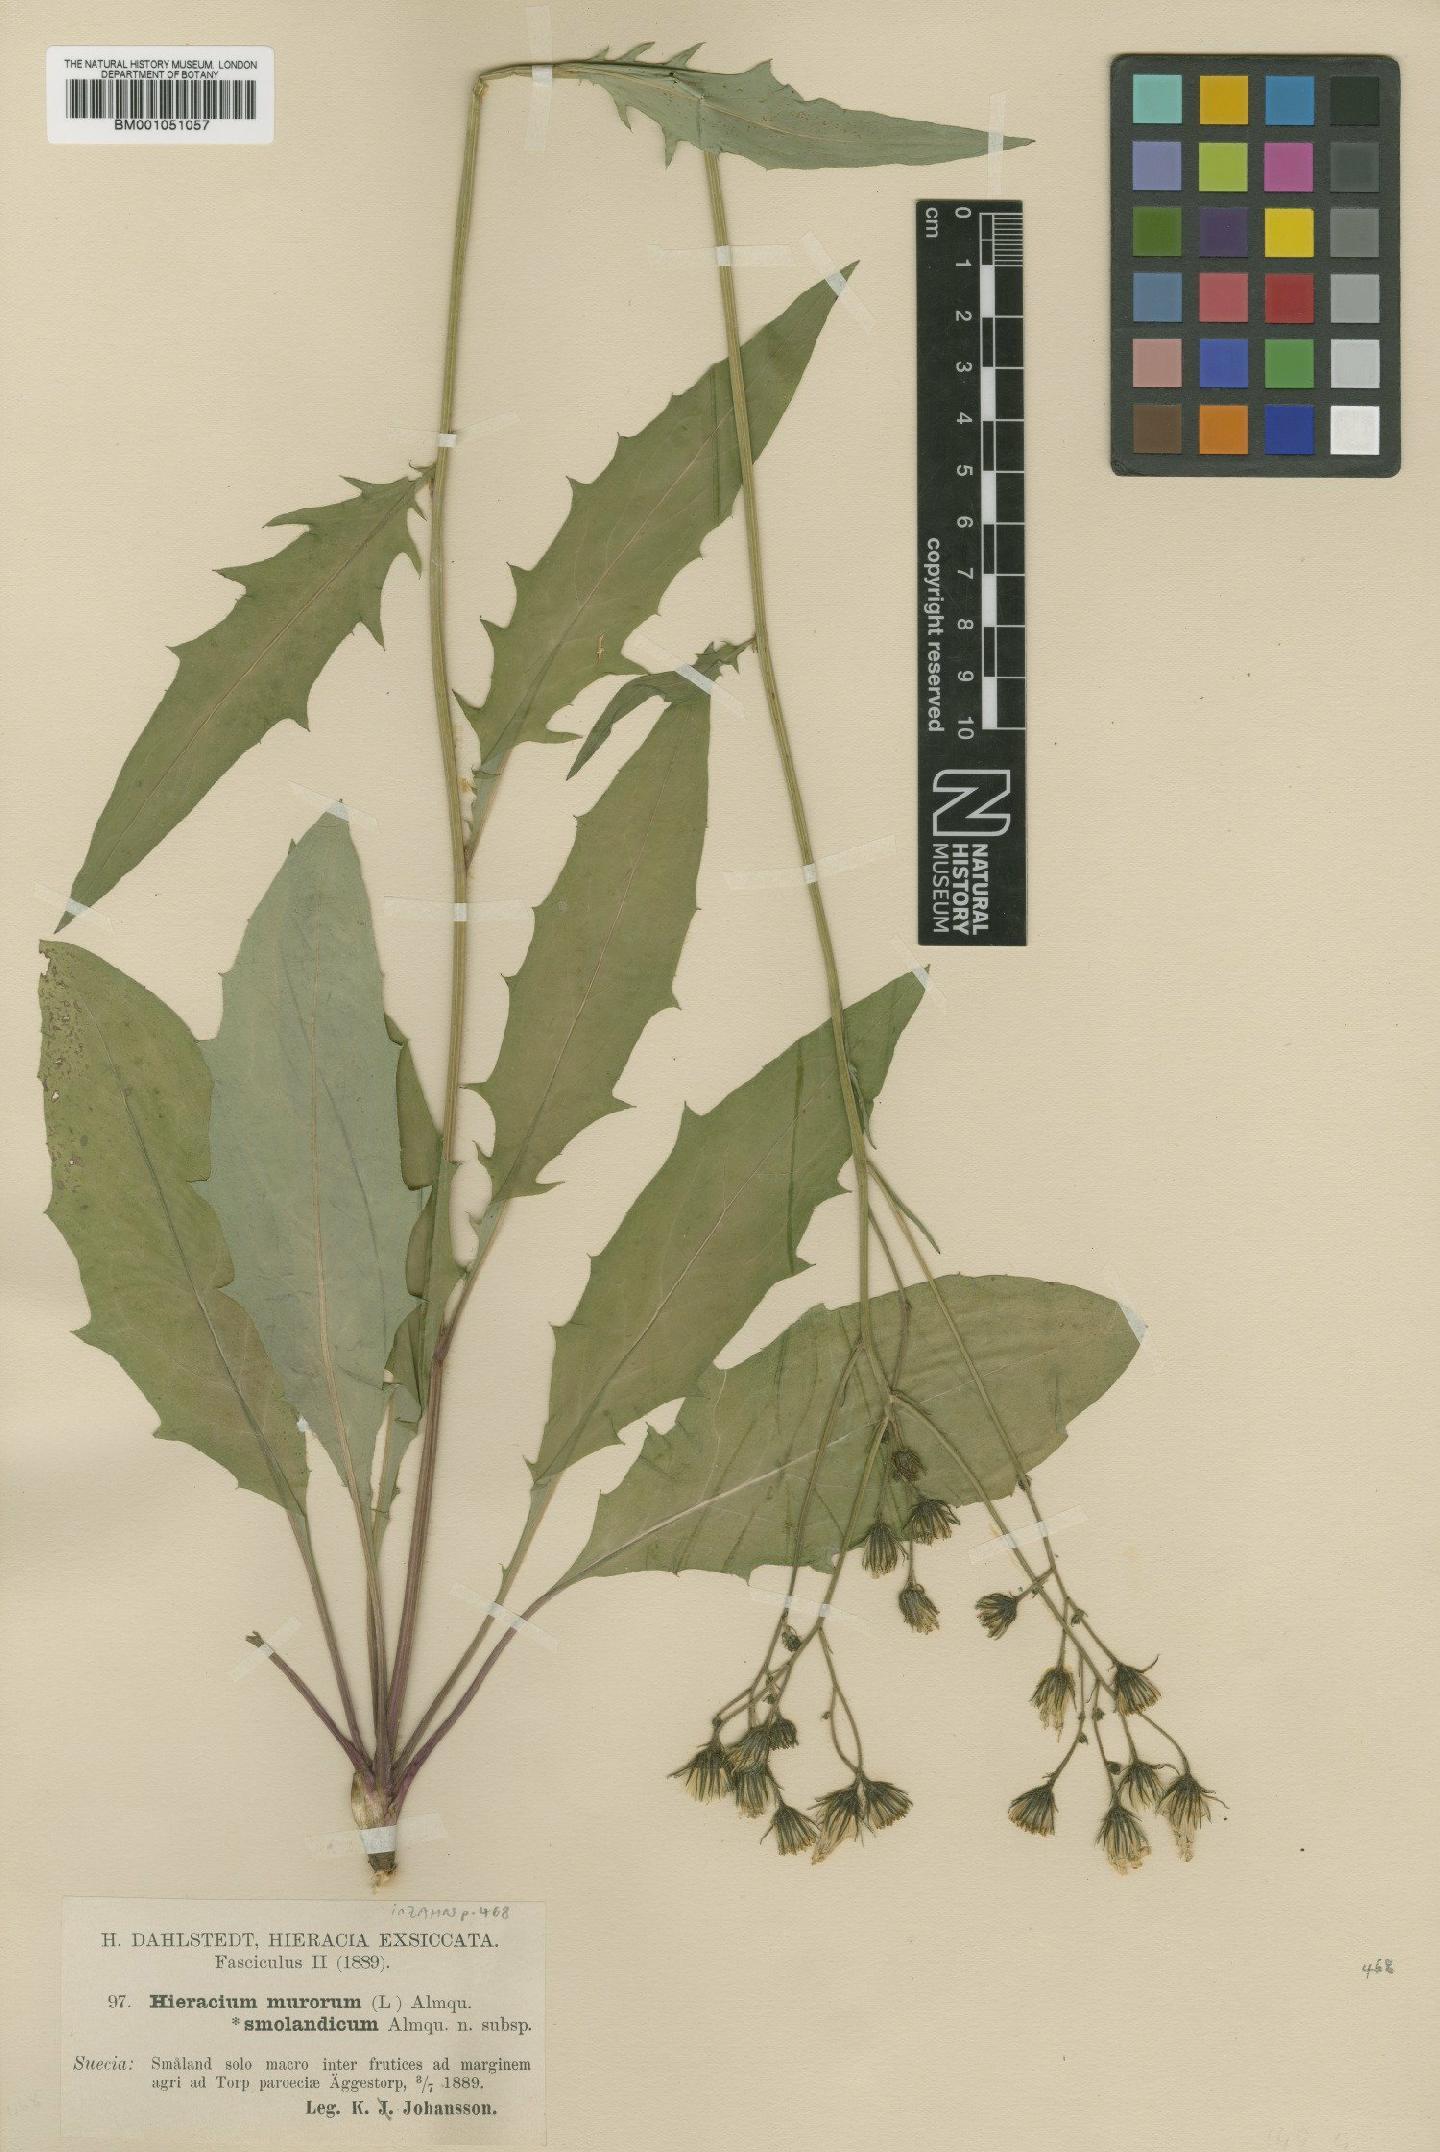 To NHMUK collection (Hieracium smolandicum (Almq.) Zahn; TYPE; NHMUK:ecatalogue:2420865)